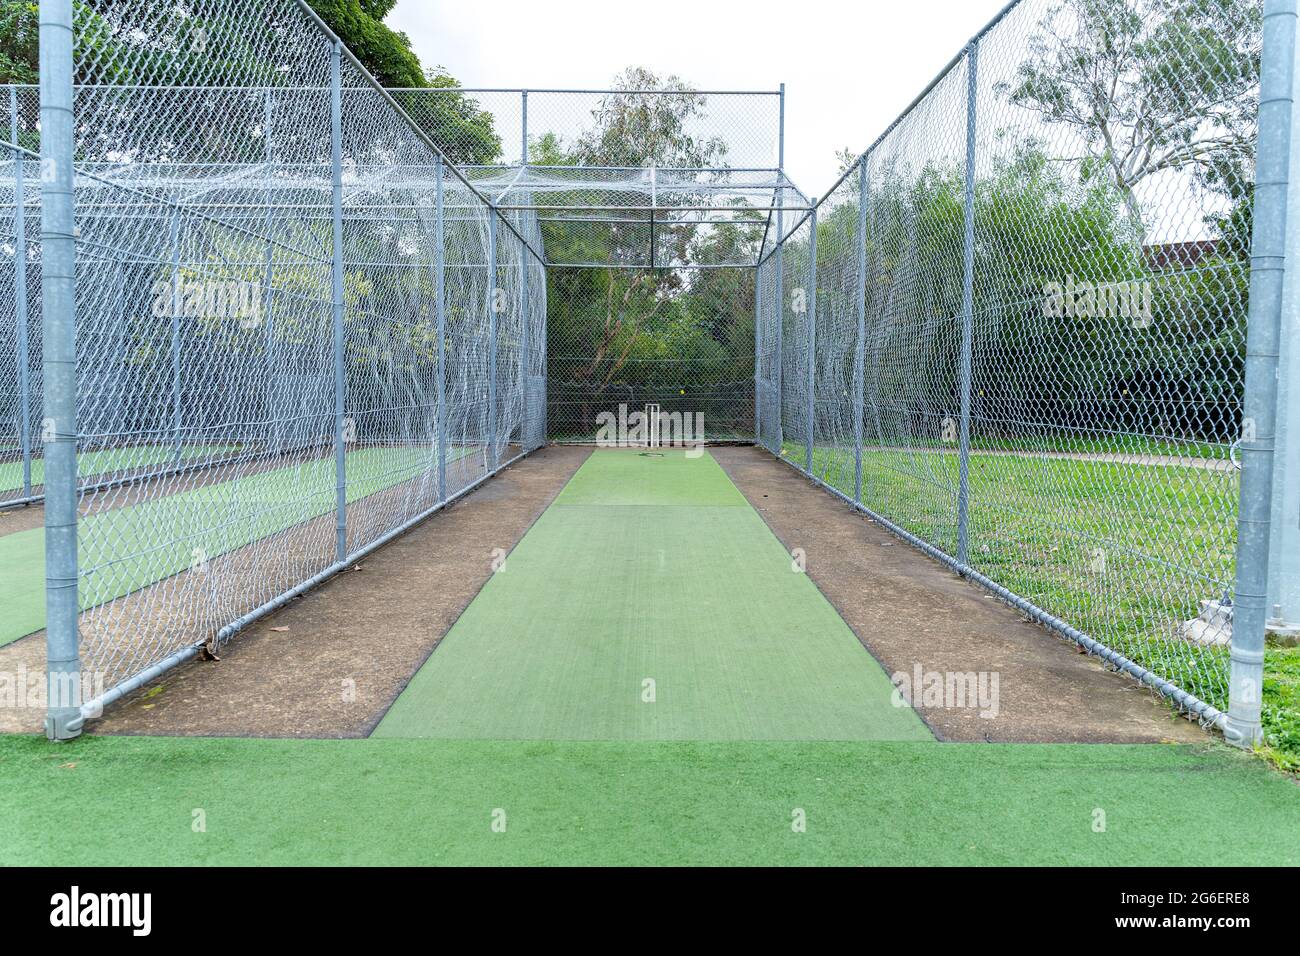 Cricket-Feld unter Netzen. Sportinfrastruktur auf dem Spielplatz in Australien. Stockfoto